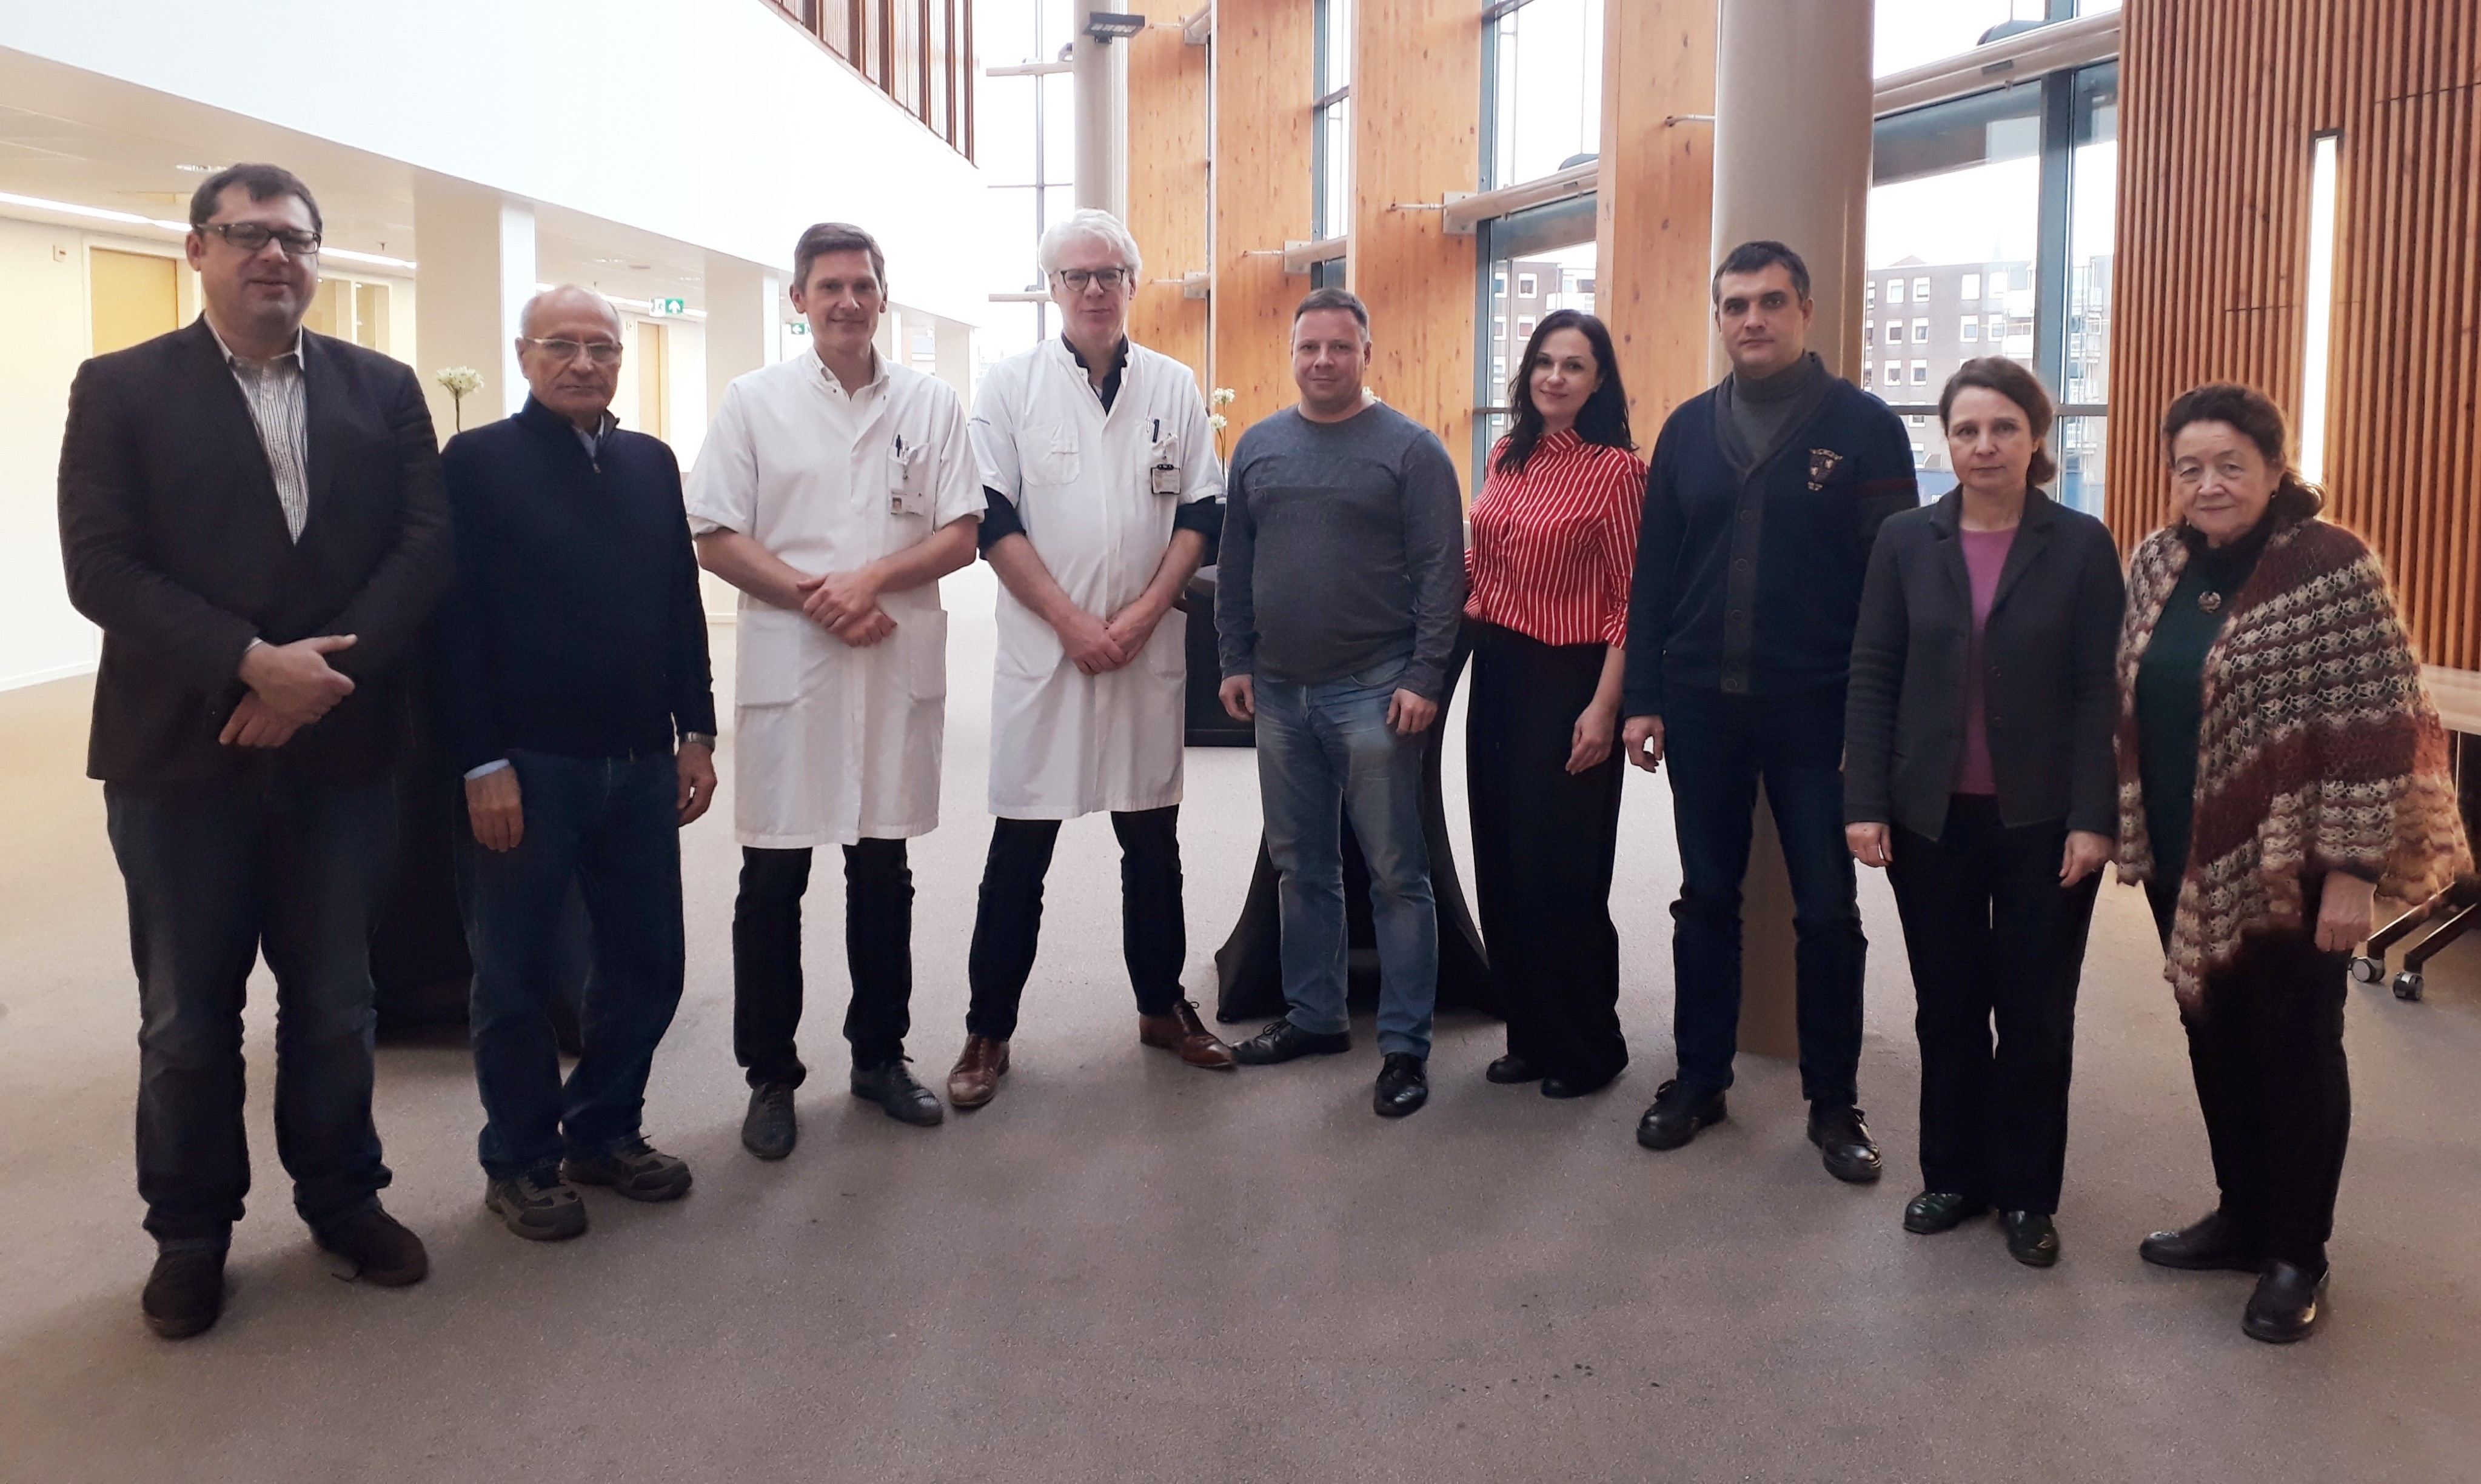 Bezoek Tatarstan aan Neurocentrum Twente